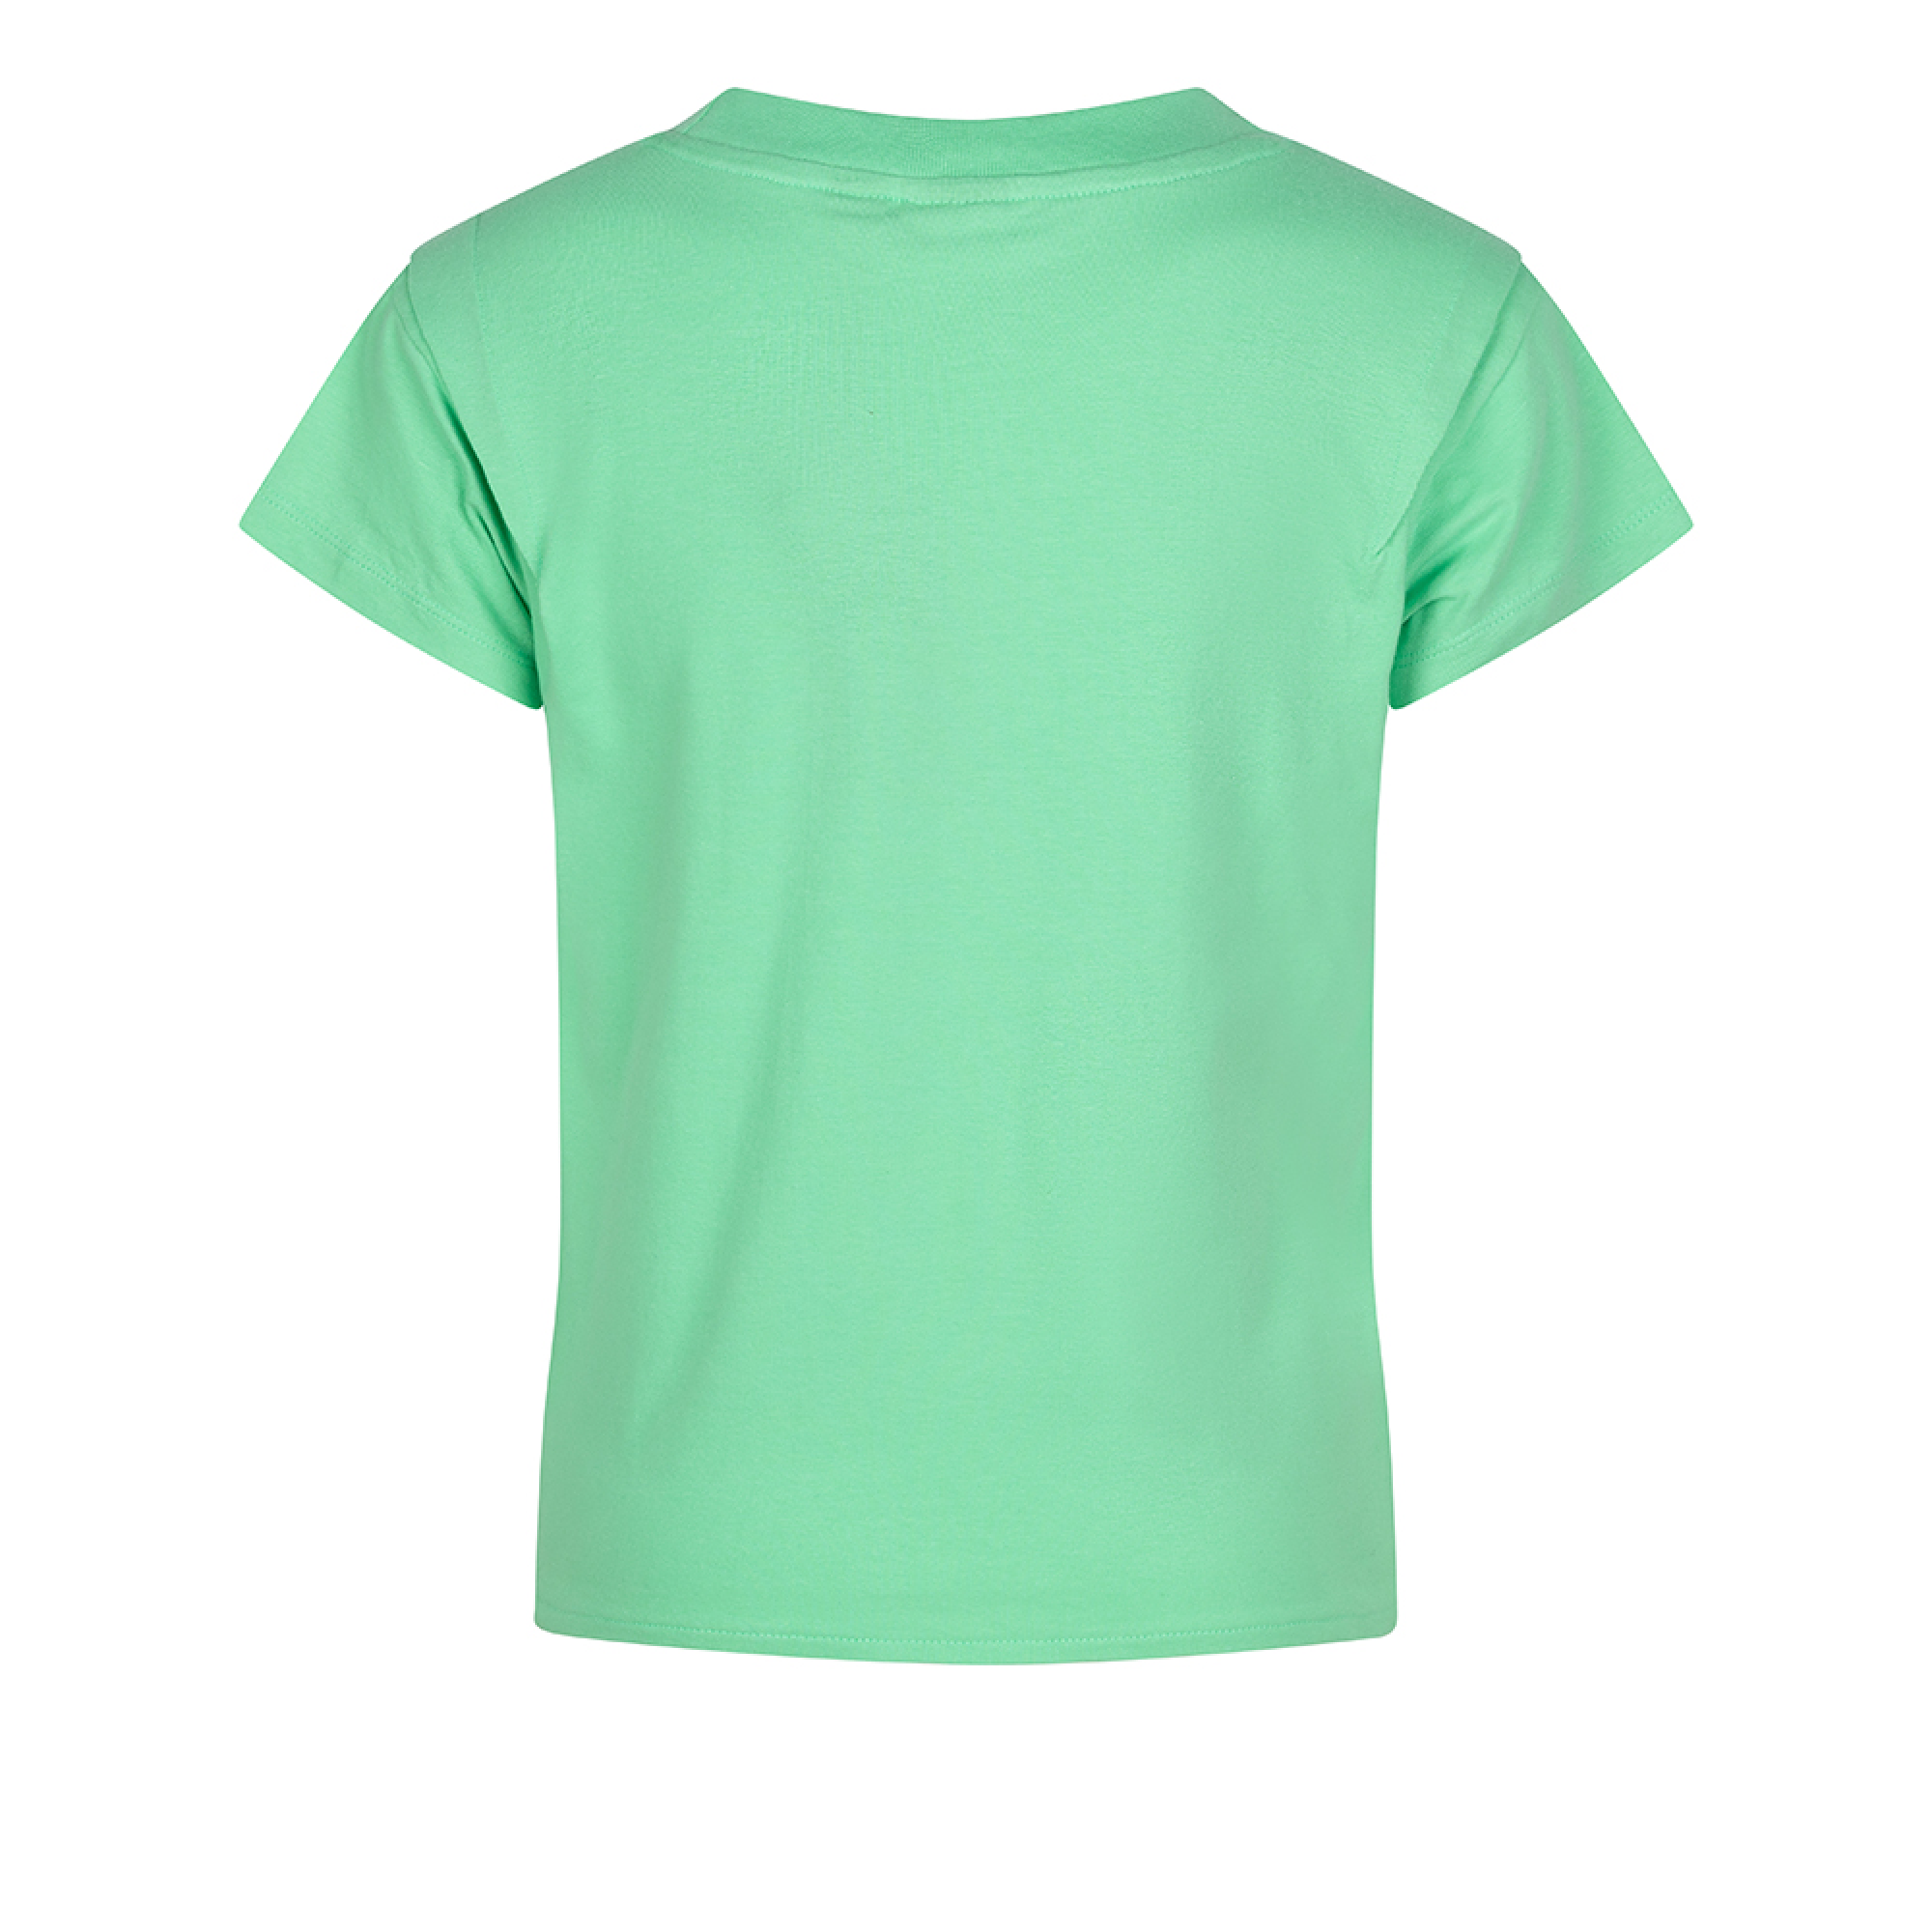 Meisjes T-shirt Knot Tee van Indian Blue Jeans in de kleur Ming green in maat 176.